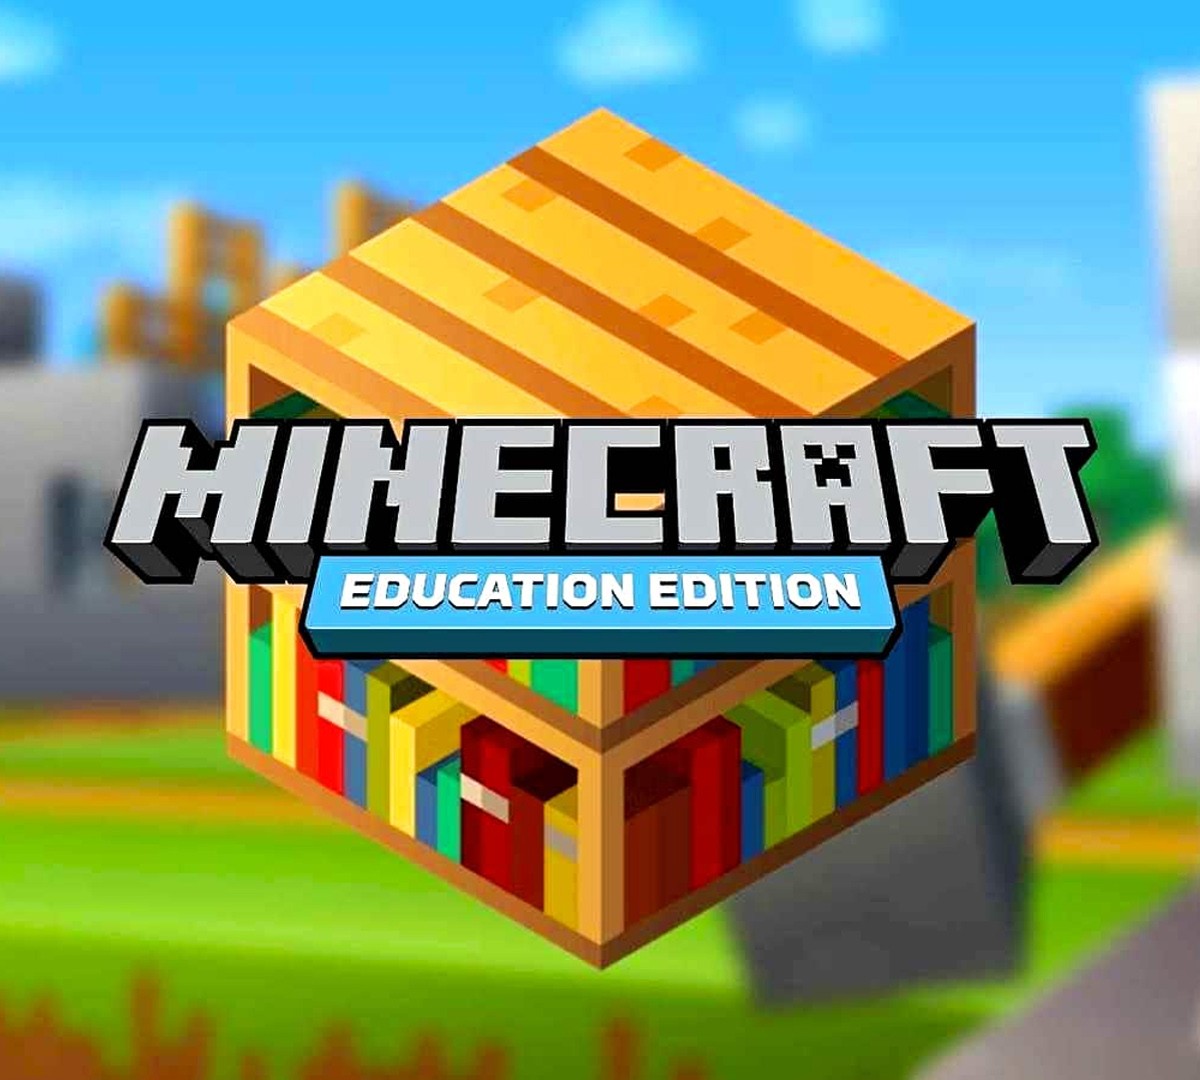 Vem aí? Mojang pode lançar Minecraft em breve para Chromebook e beta já  está disponível 